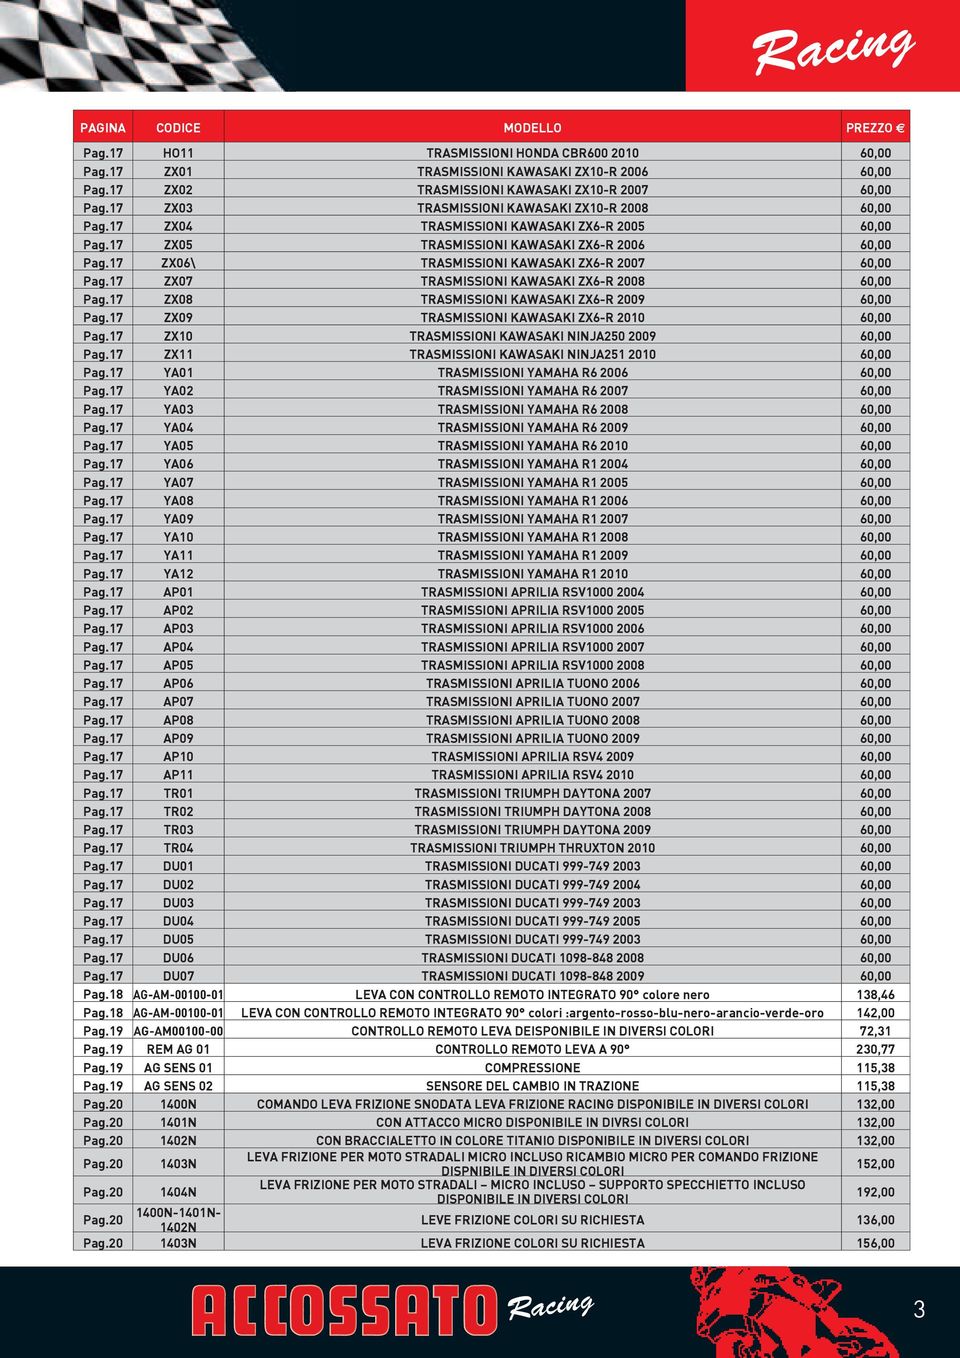 17 ZX06\ TRASMISSIONI KAWASAKI ZX6-R 2007 60,00 Pag.17 ZX07 TRASMISSIONI KAWASAKI ZX6-R 2008 60,00 Pag.17 ZX08 TRASMISSIONI KAWASAKI ZX6-R 2009 60,00 Pag.